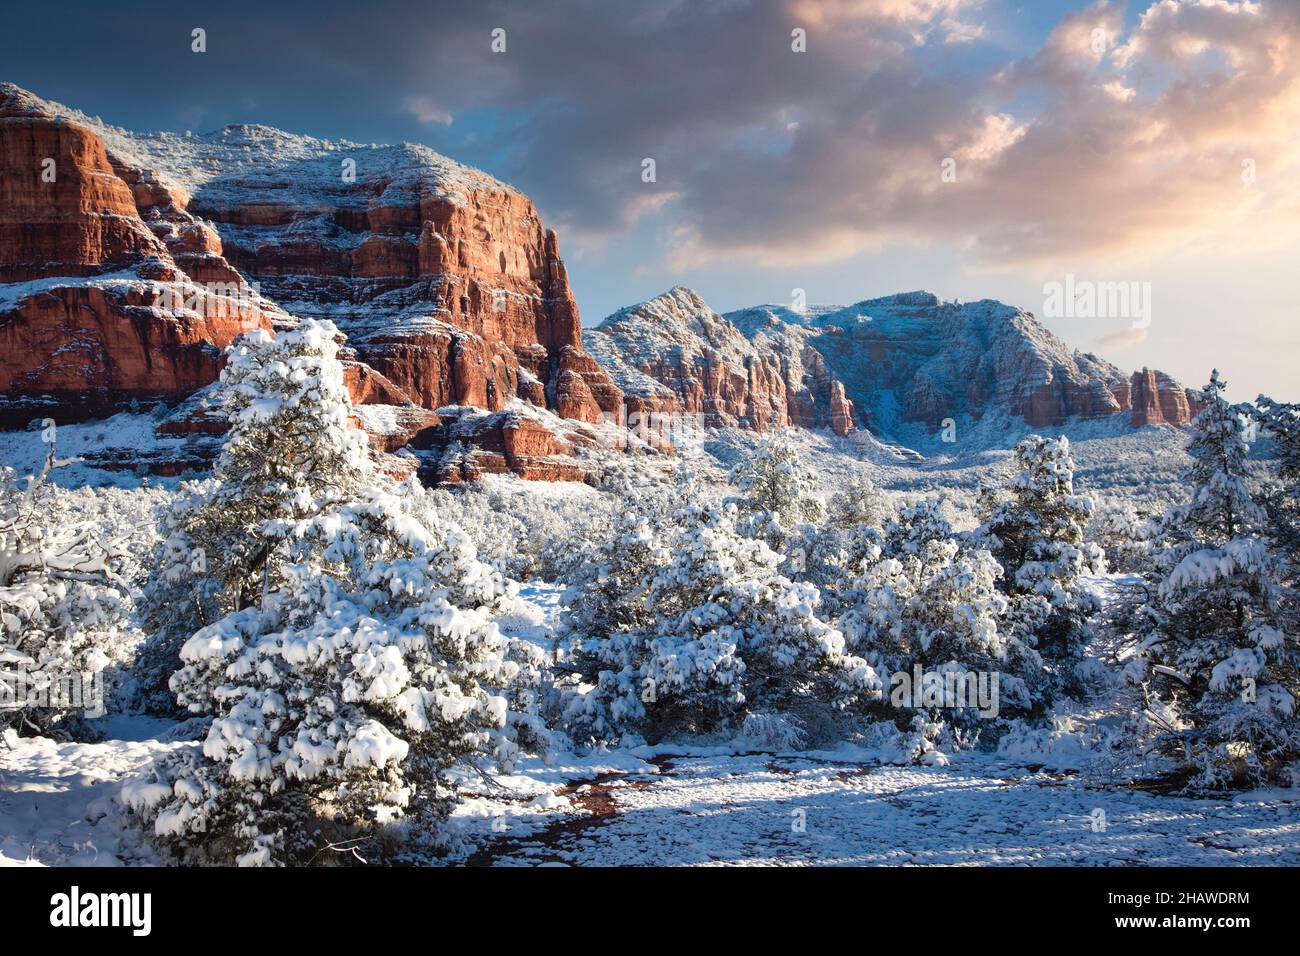 Ein Winterschnee macht die Landschaft um Sedona, Arizona, zu etwas ganz Besonderem. Stockfoto